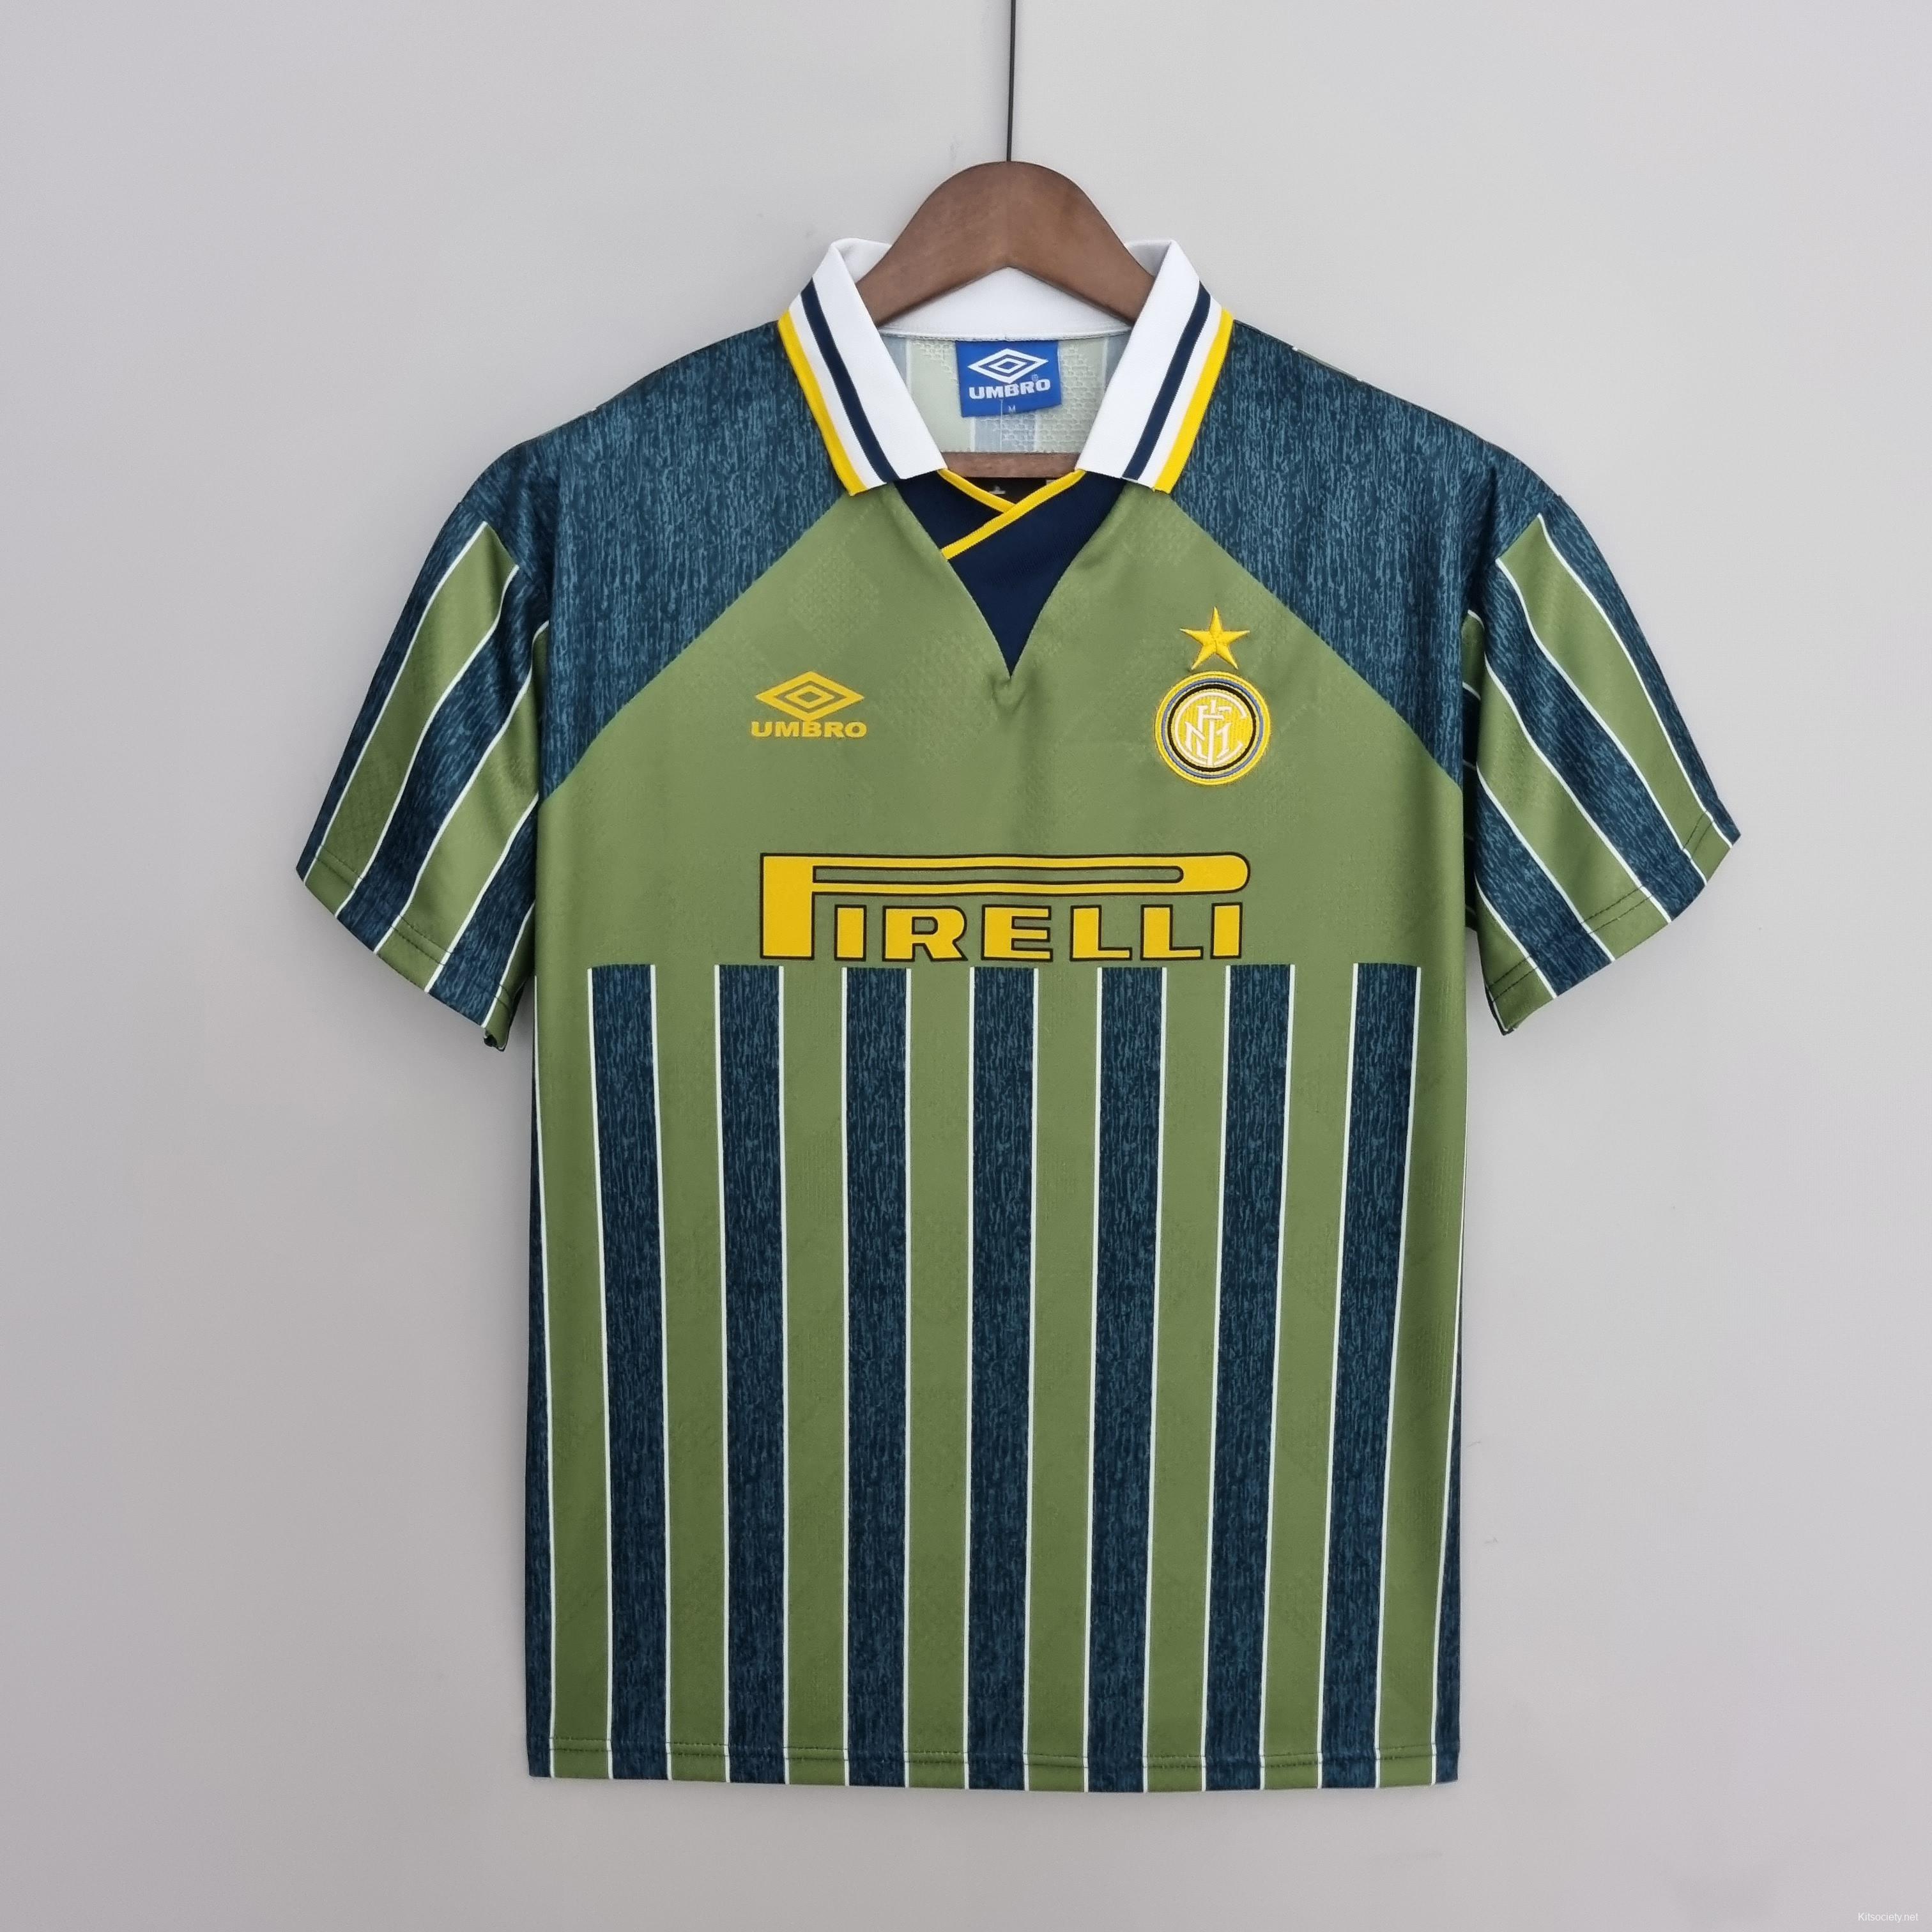 Retro 1984/86 Celtic Third Soccer Jersey - Kitsociety